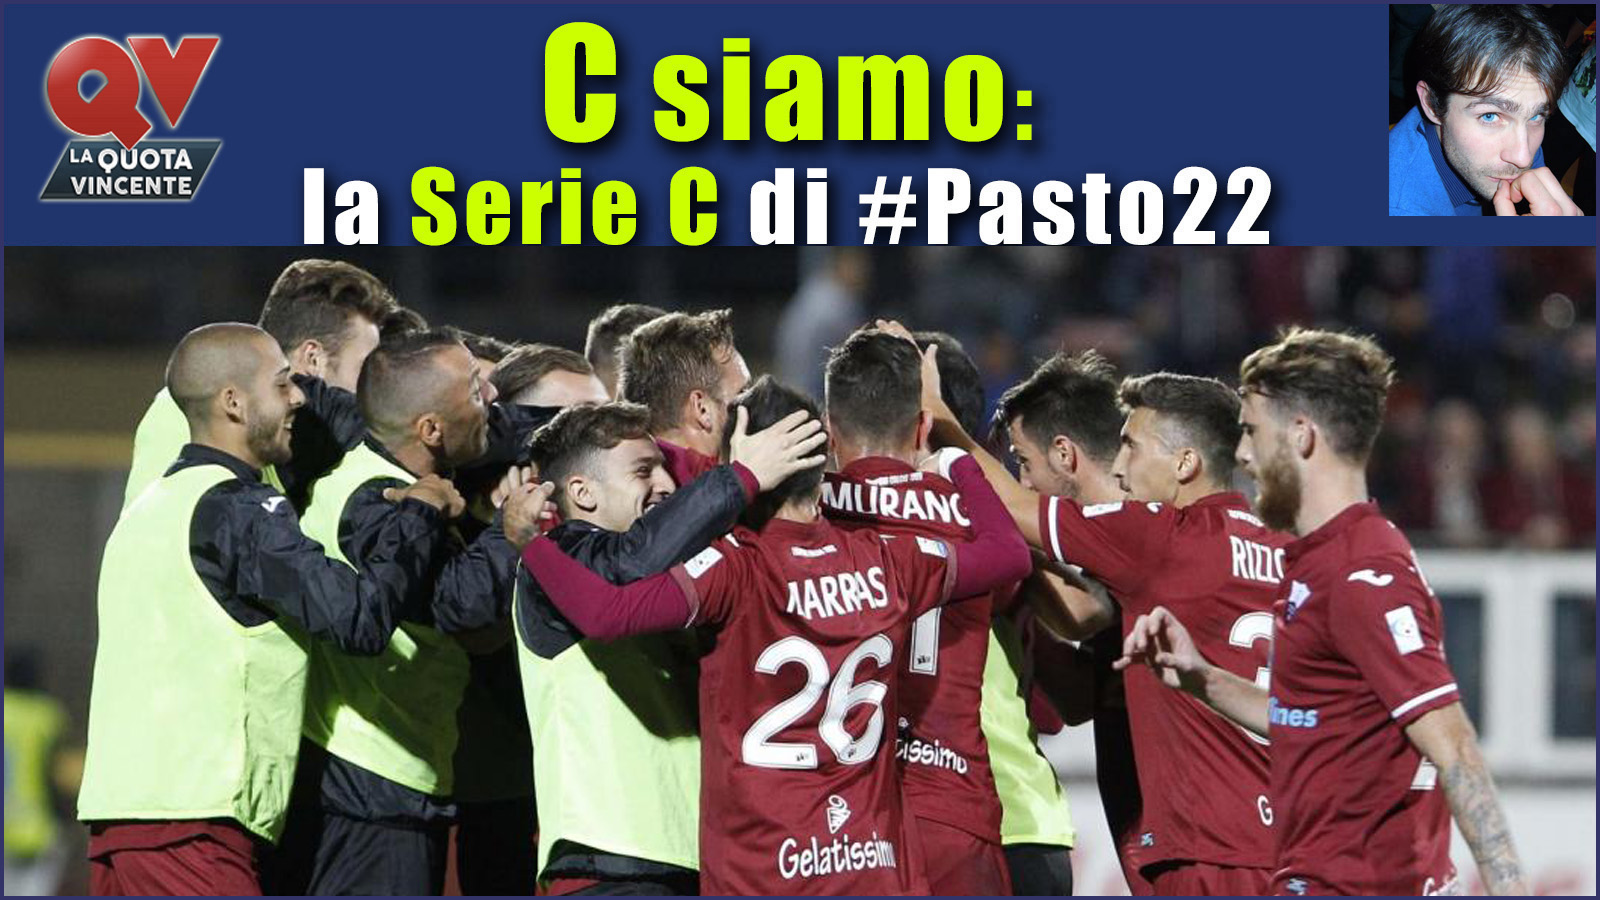 Pronostici Serie C martedì 7 novembre: #Csiamo, il blog di #Pasto22